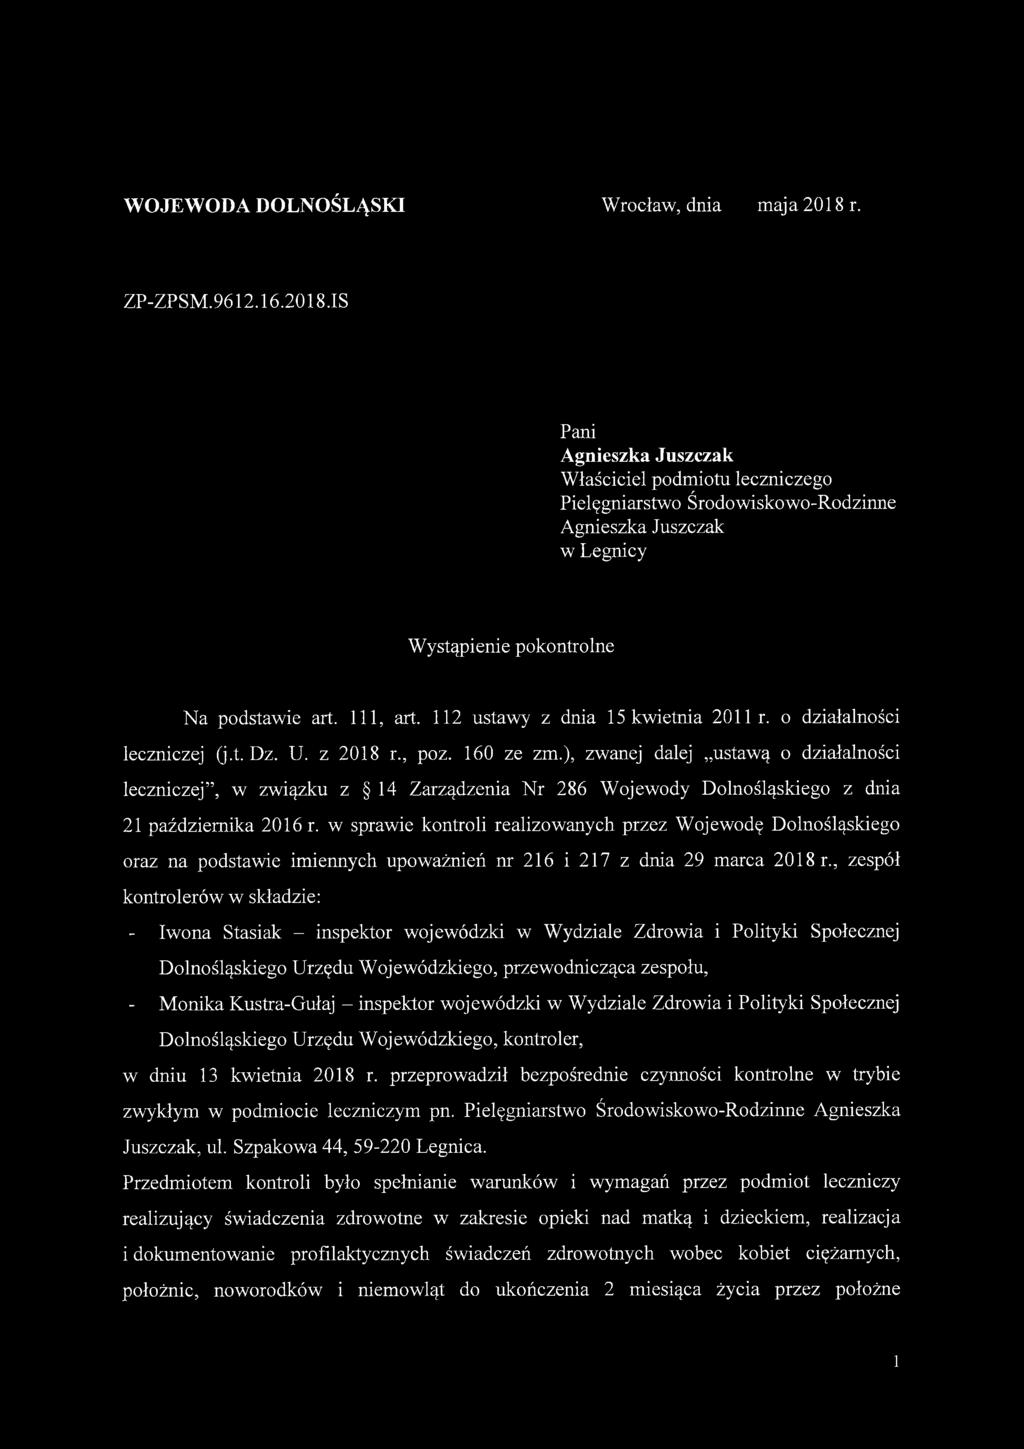 112 ustawy z dnia 15 kwietnia 2011 r. o działalności leczniczej (j.t. Dz. U. z 2018 r., poz. 160 ze zm.